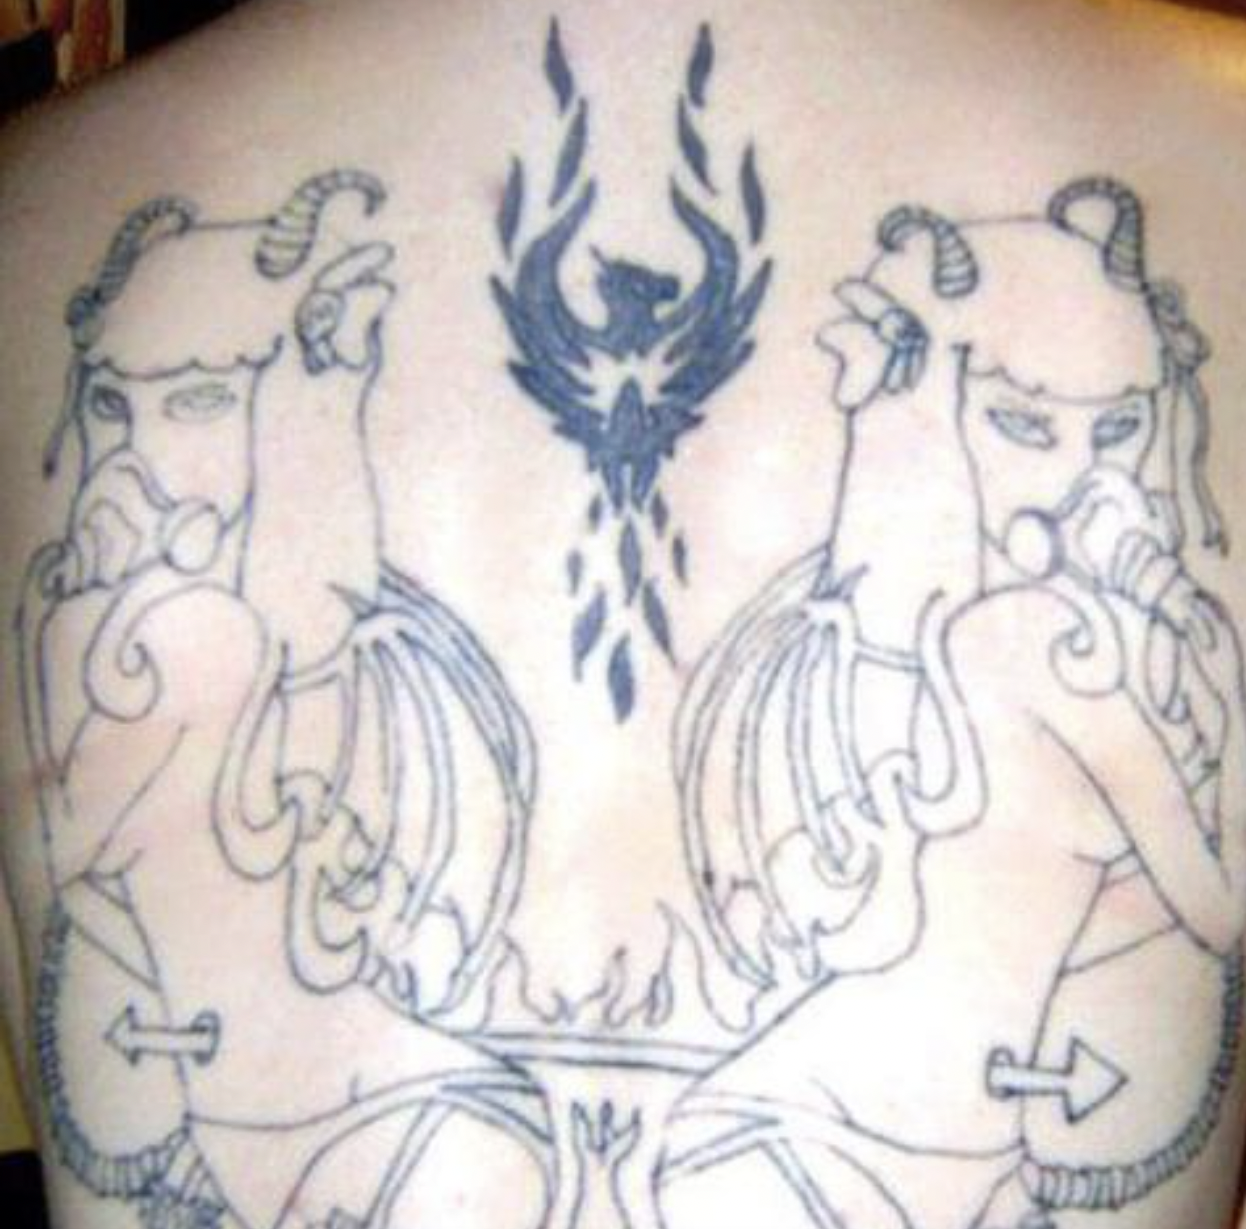 Bad Tattoos - tattoo - my